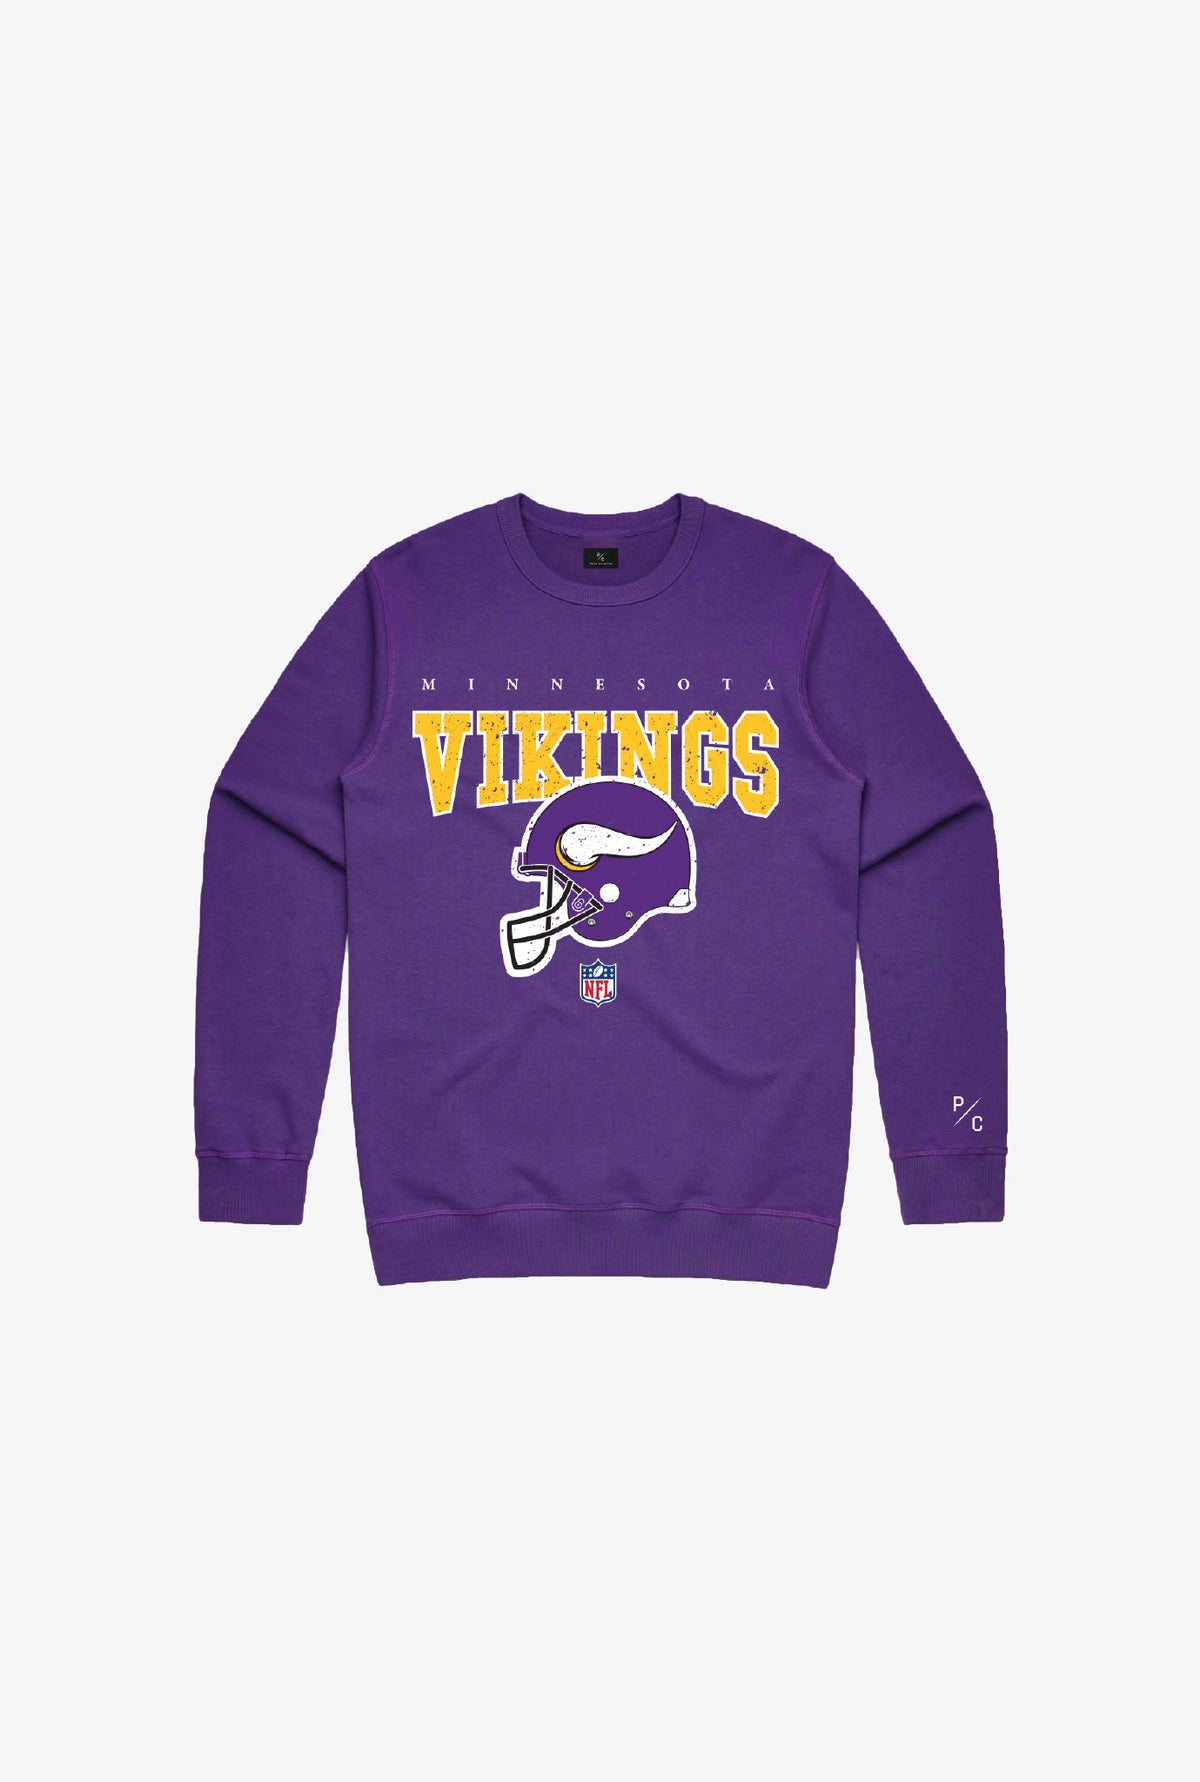 Minnesota Vikings Vintage Kids Crewneck - Purple